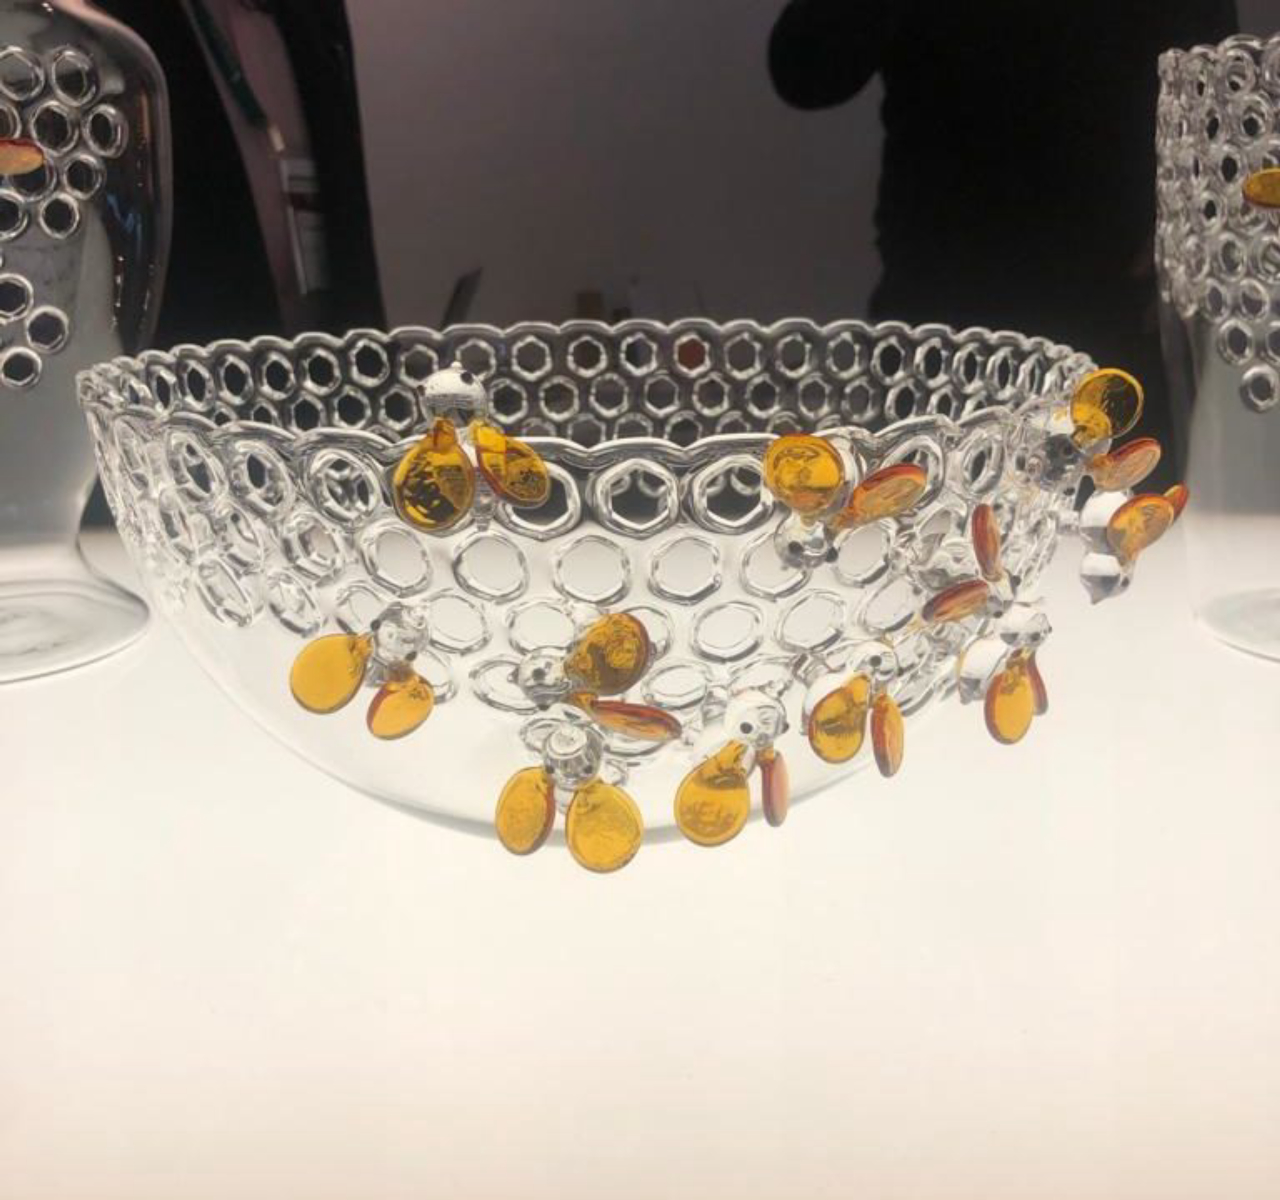  Peças de cristal feita à mão com toda a delicadeza pela italiana Massimo Lunardon. 